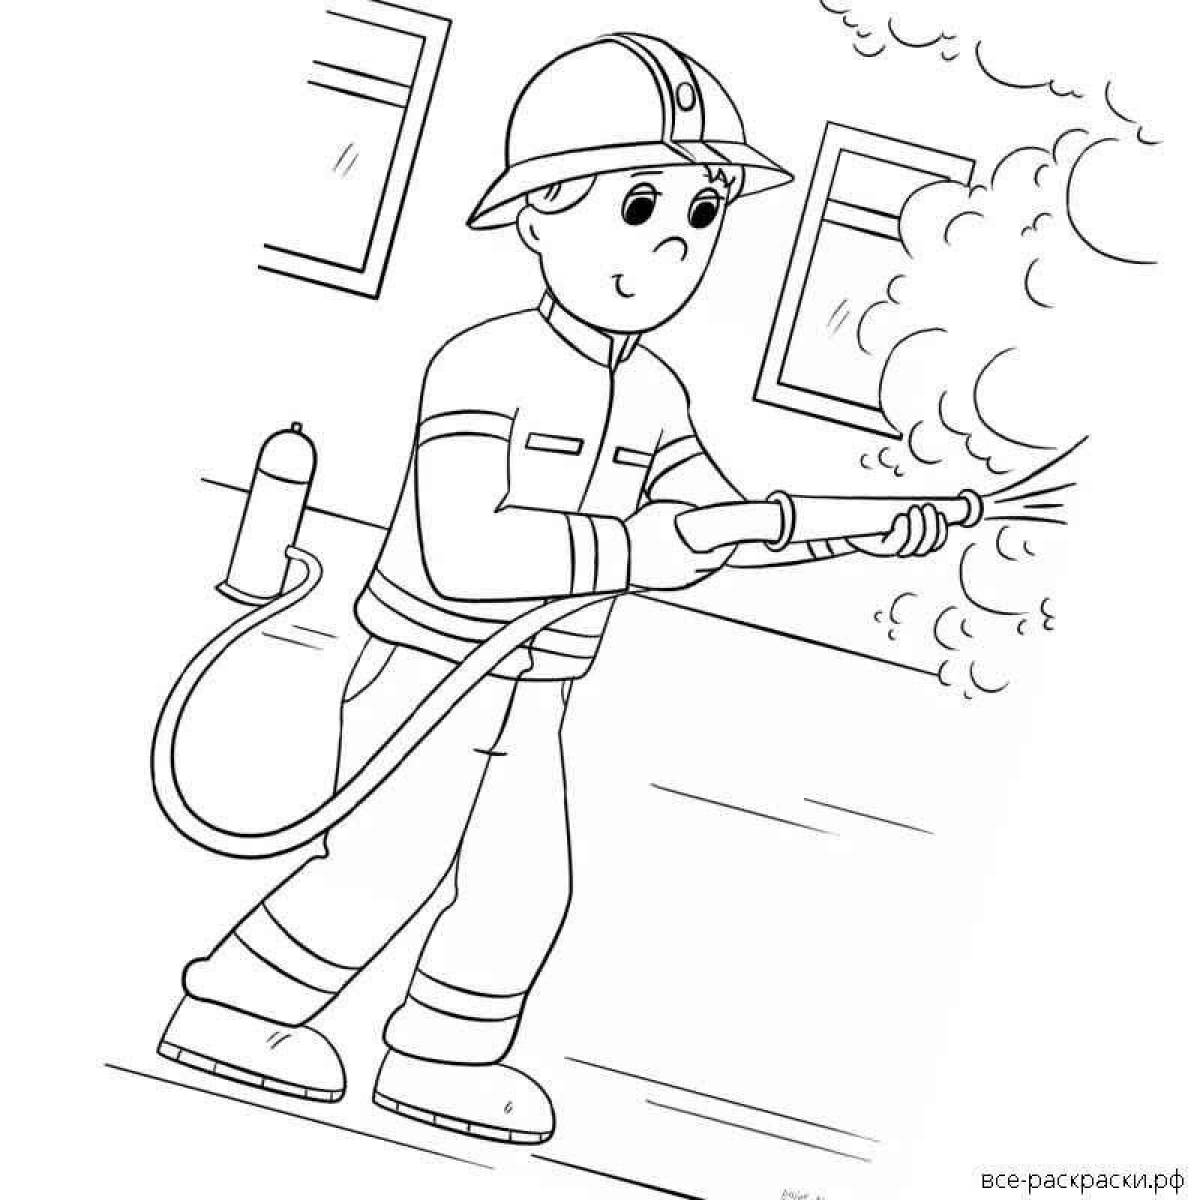 Fireman inspirational coloring book